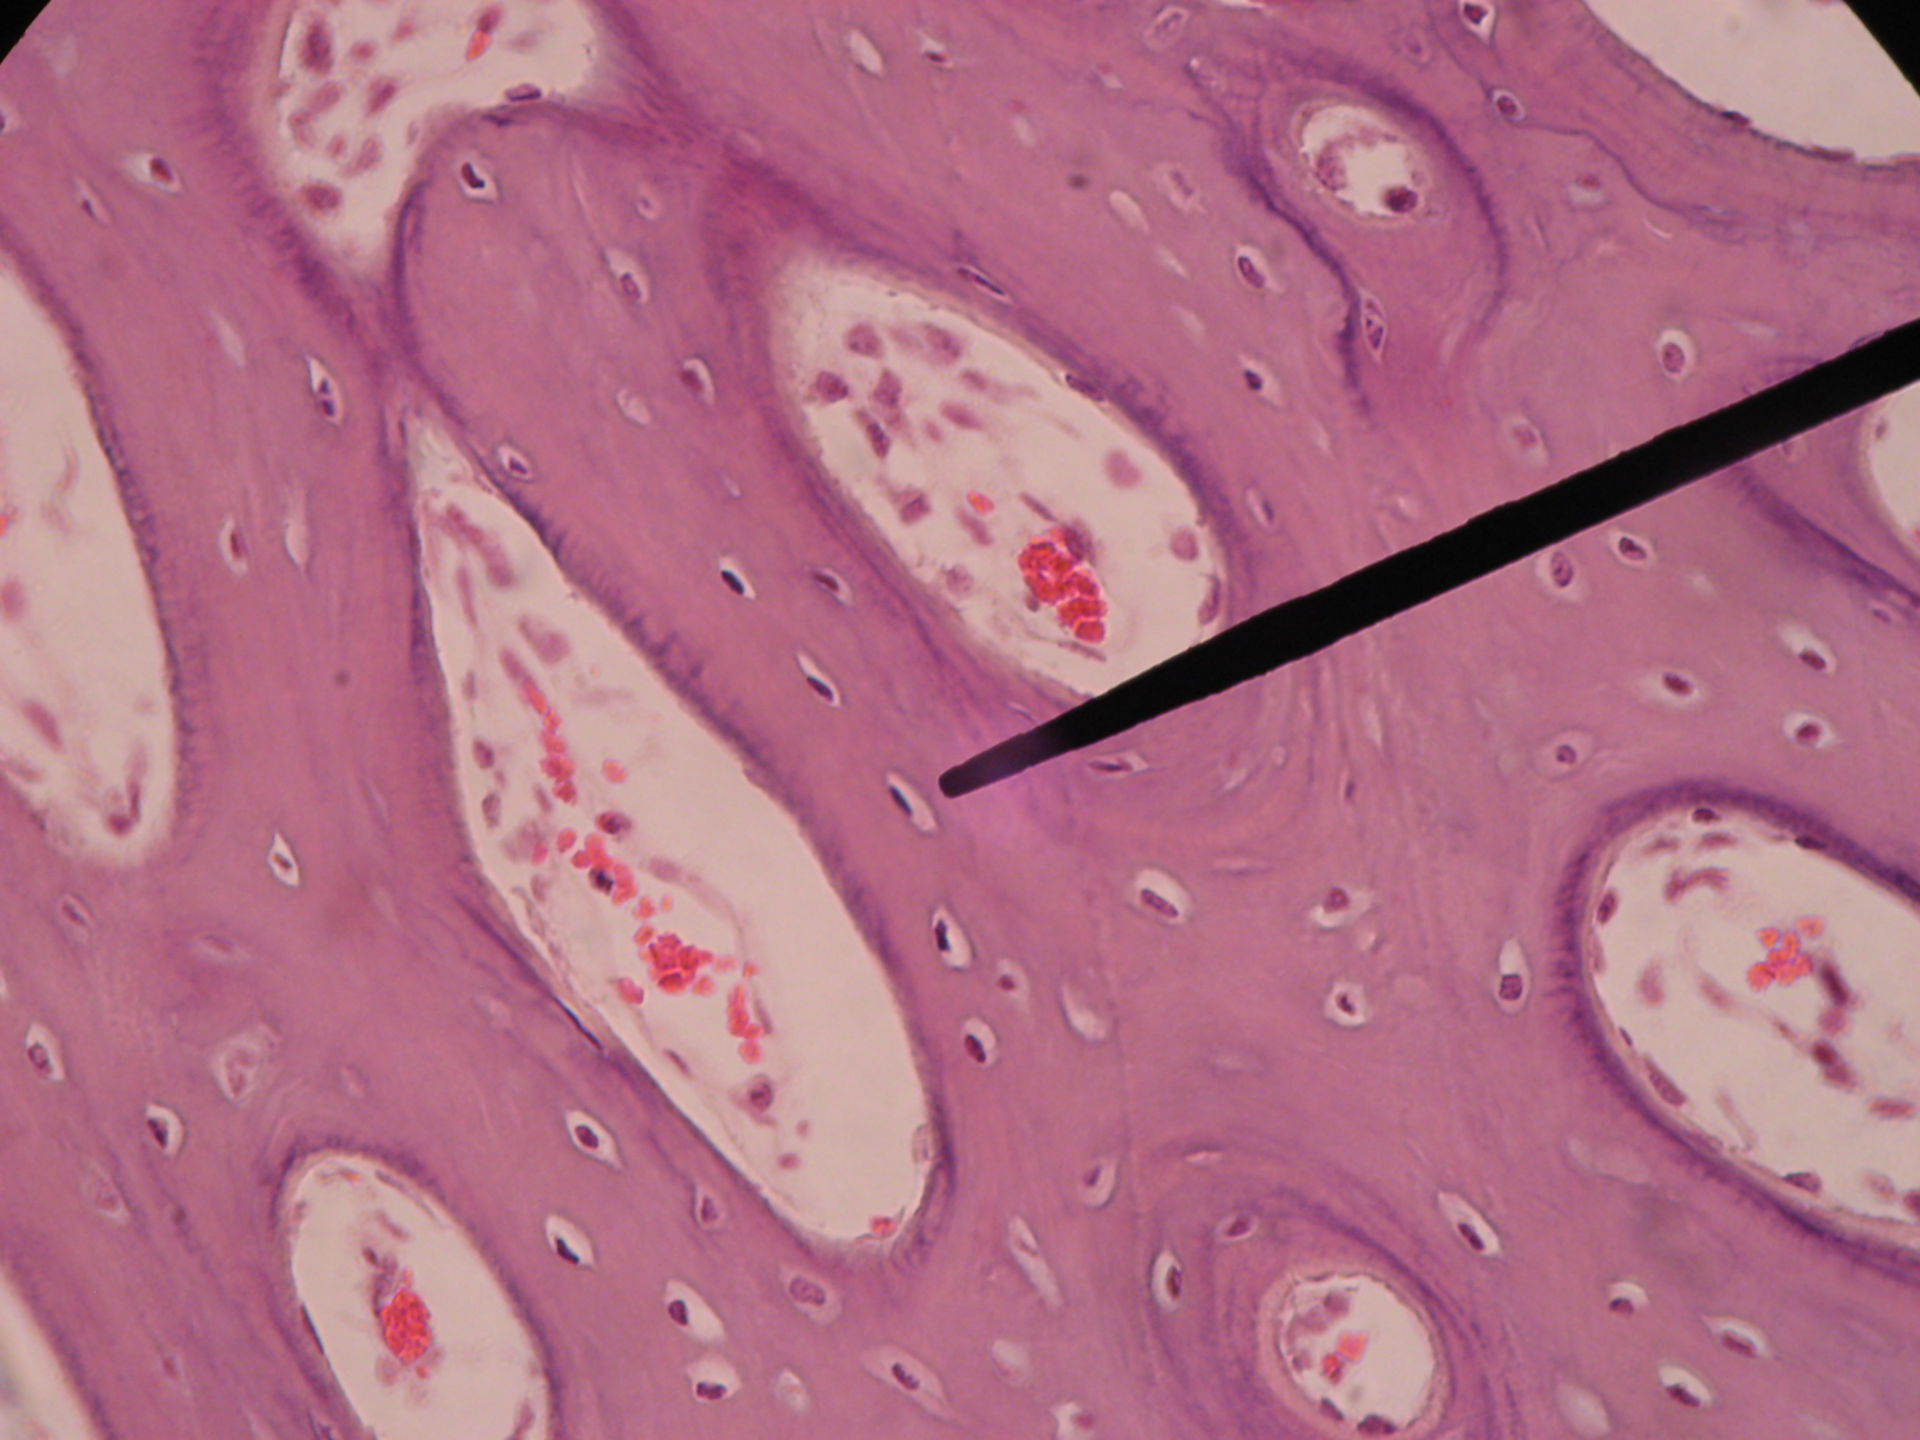 Rotes Knochenmark eines Schweinefetus (8) - Osteoprogenitorzellen   Osteoblasten